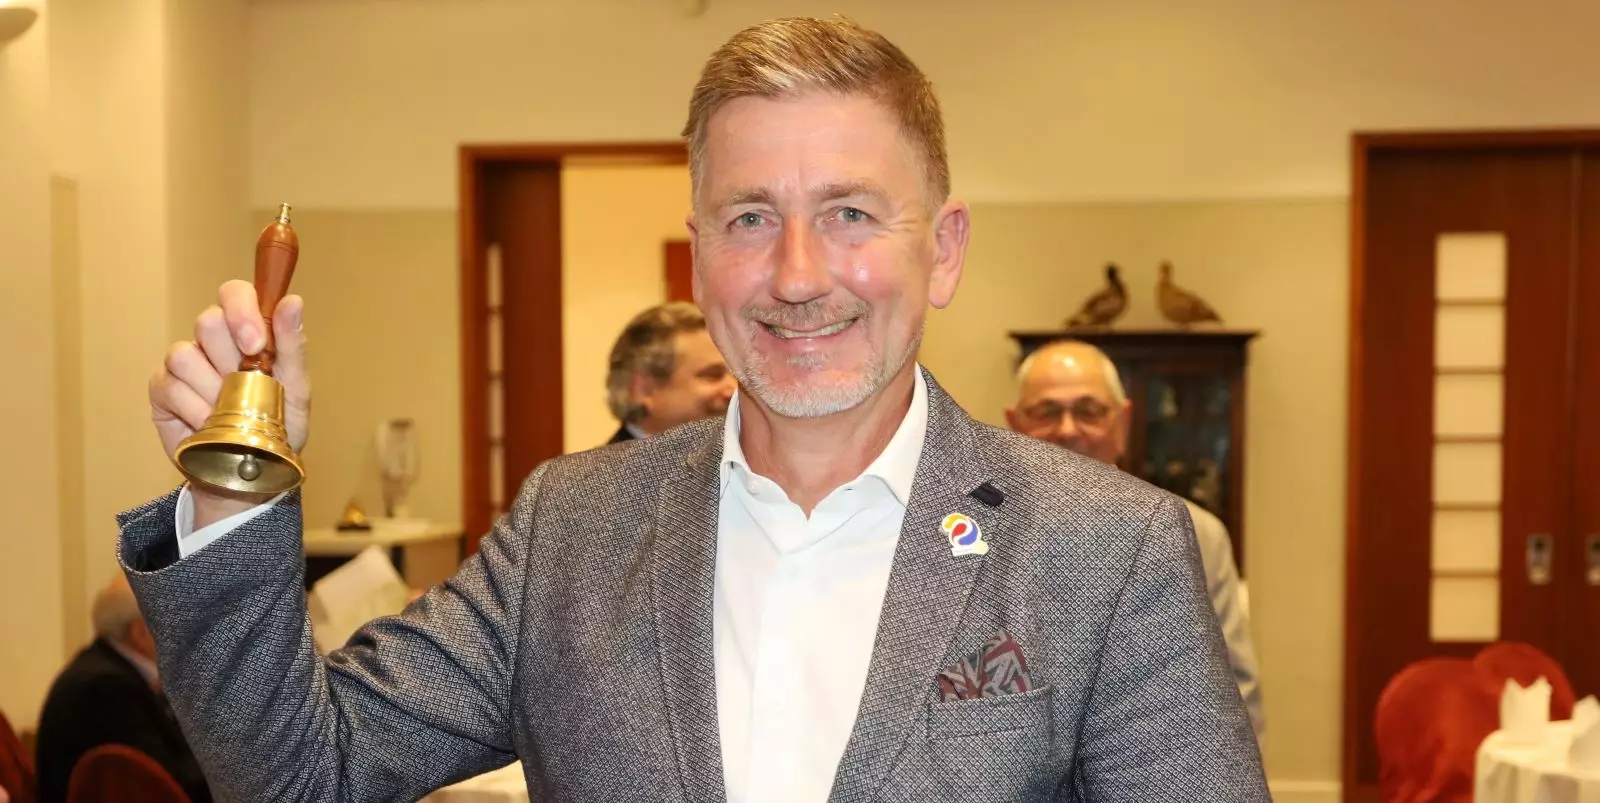 Torsten Schümann ist neuer Präsident im Rotary-Club Hamburg-Harburg. Foto: Christian Bittcher